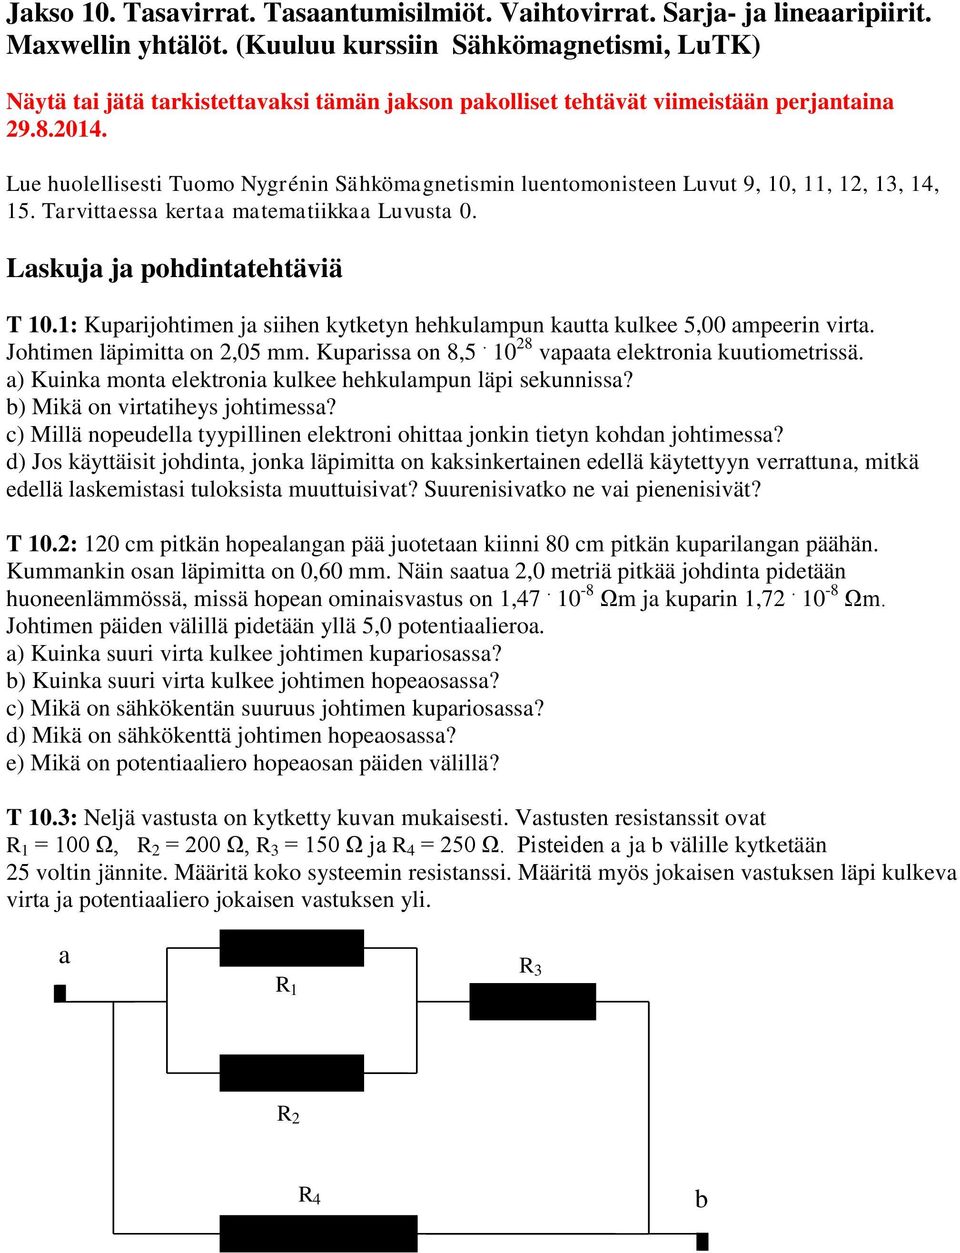 Lu huolllissti Tuomo Nygrénin Sähkömagntismin luntomonistn Luvut 9, 10, 11, 12, 13, 14, 15. Tarvittassa krtaa matmatiikkaa Luvusta 0. Laskuja ja pohdintathtäviä T 10.